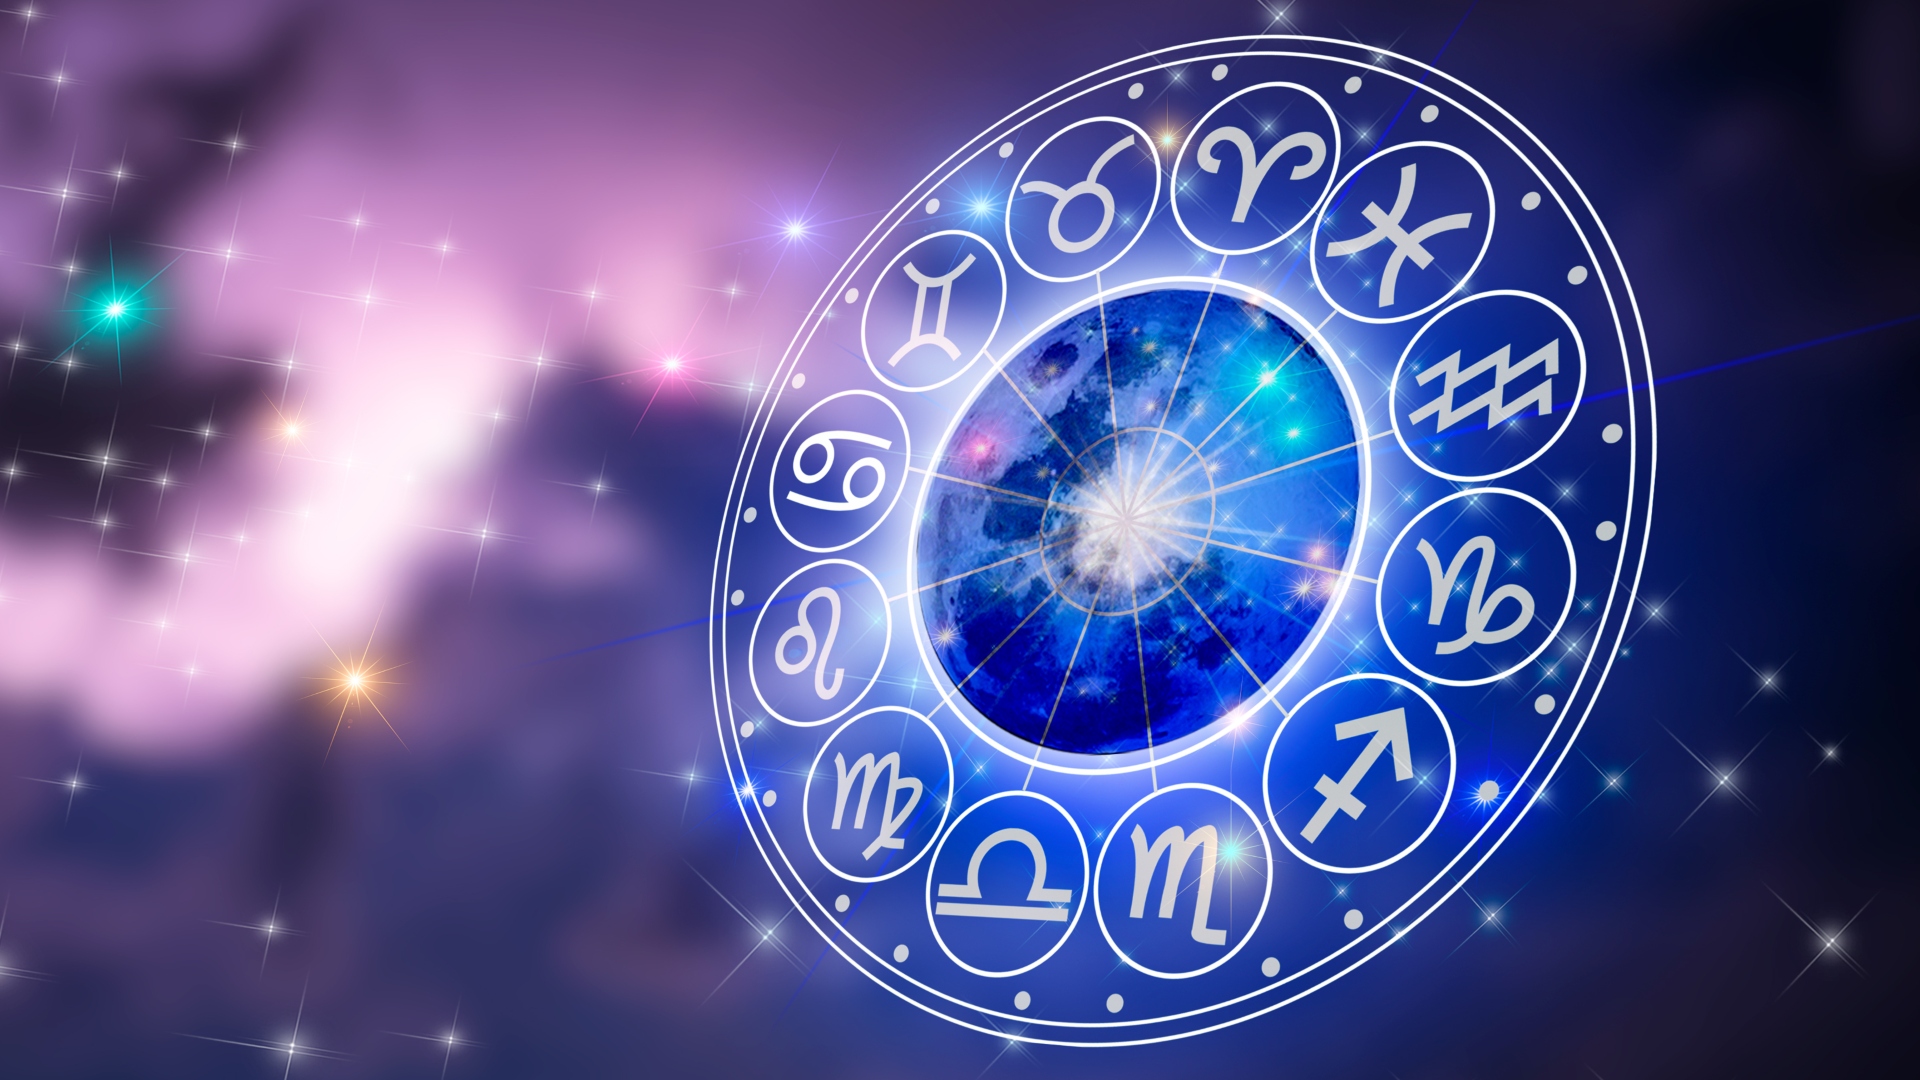 Aquarius season 2023: Your horoscope for revolutionary time